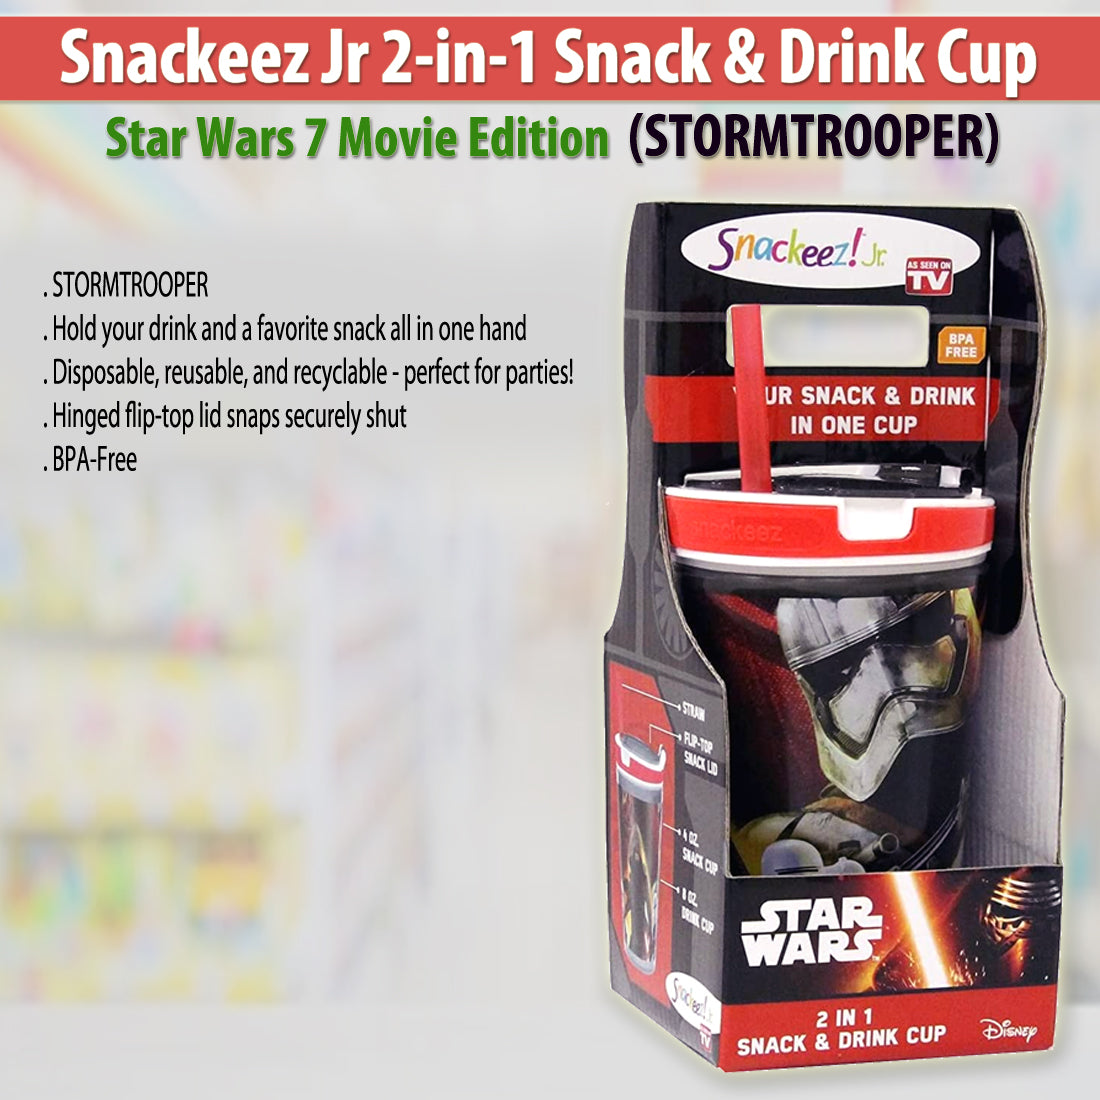 Snackeez - Snackeez Snack & Drink Cup, 2 In 1, Shop